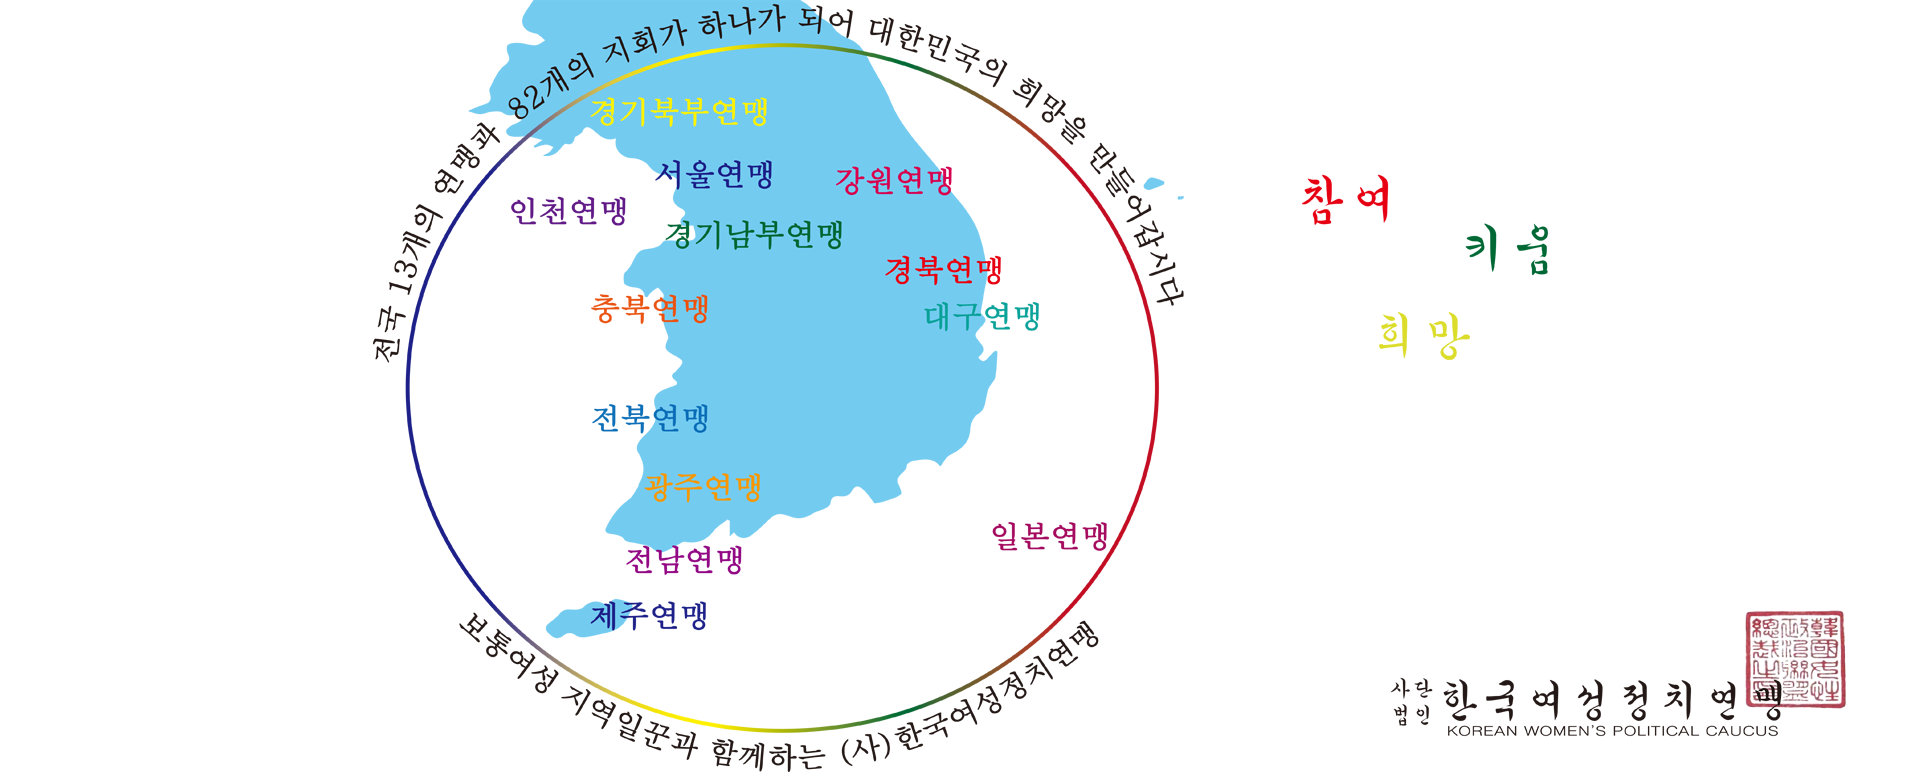 전국 13개의 연맹과 82개의 지회가 하나가 되어 대한민국의 희망을 만들어갑니다.